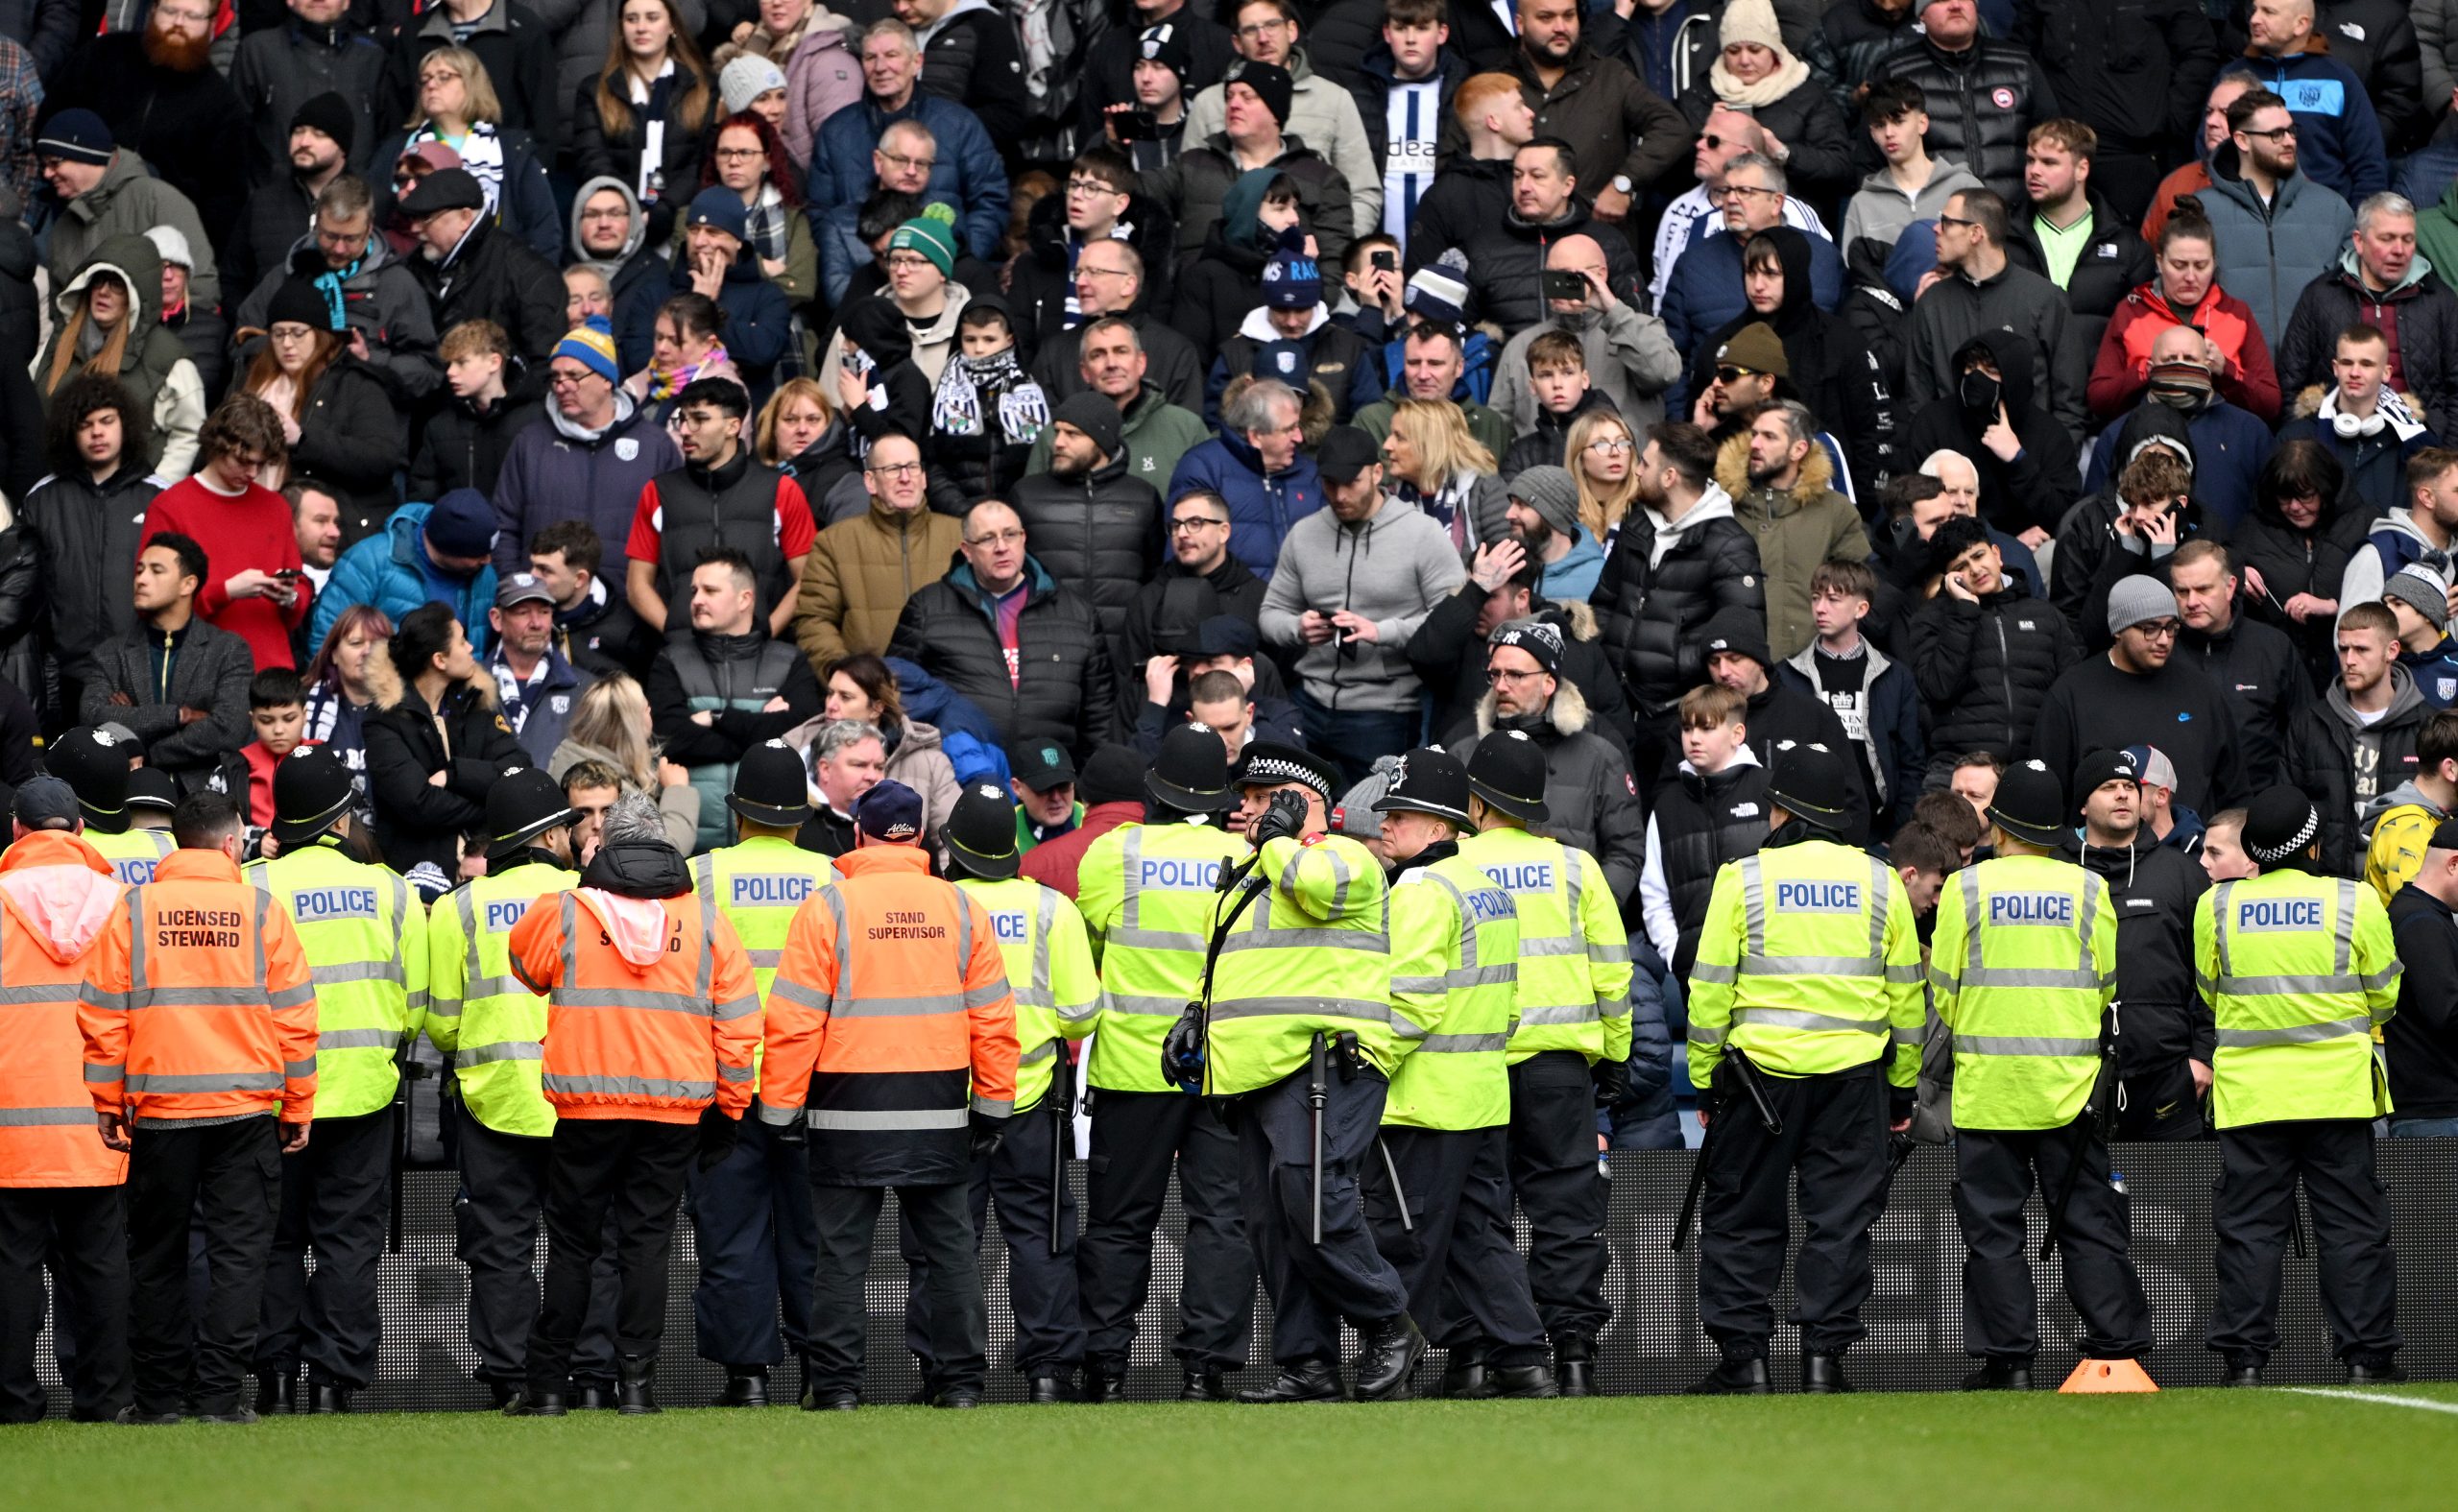 Policiamento fez barreira de proteção (Foto: Shaun Botterill/Getty Images)